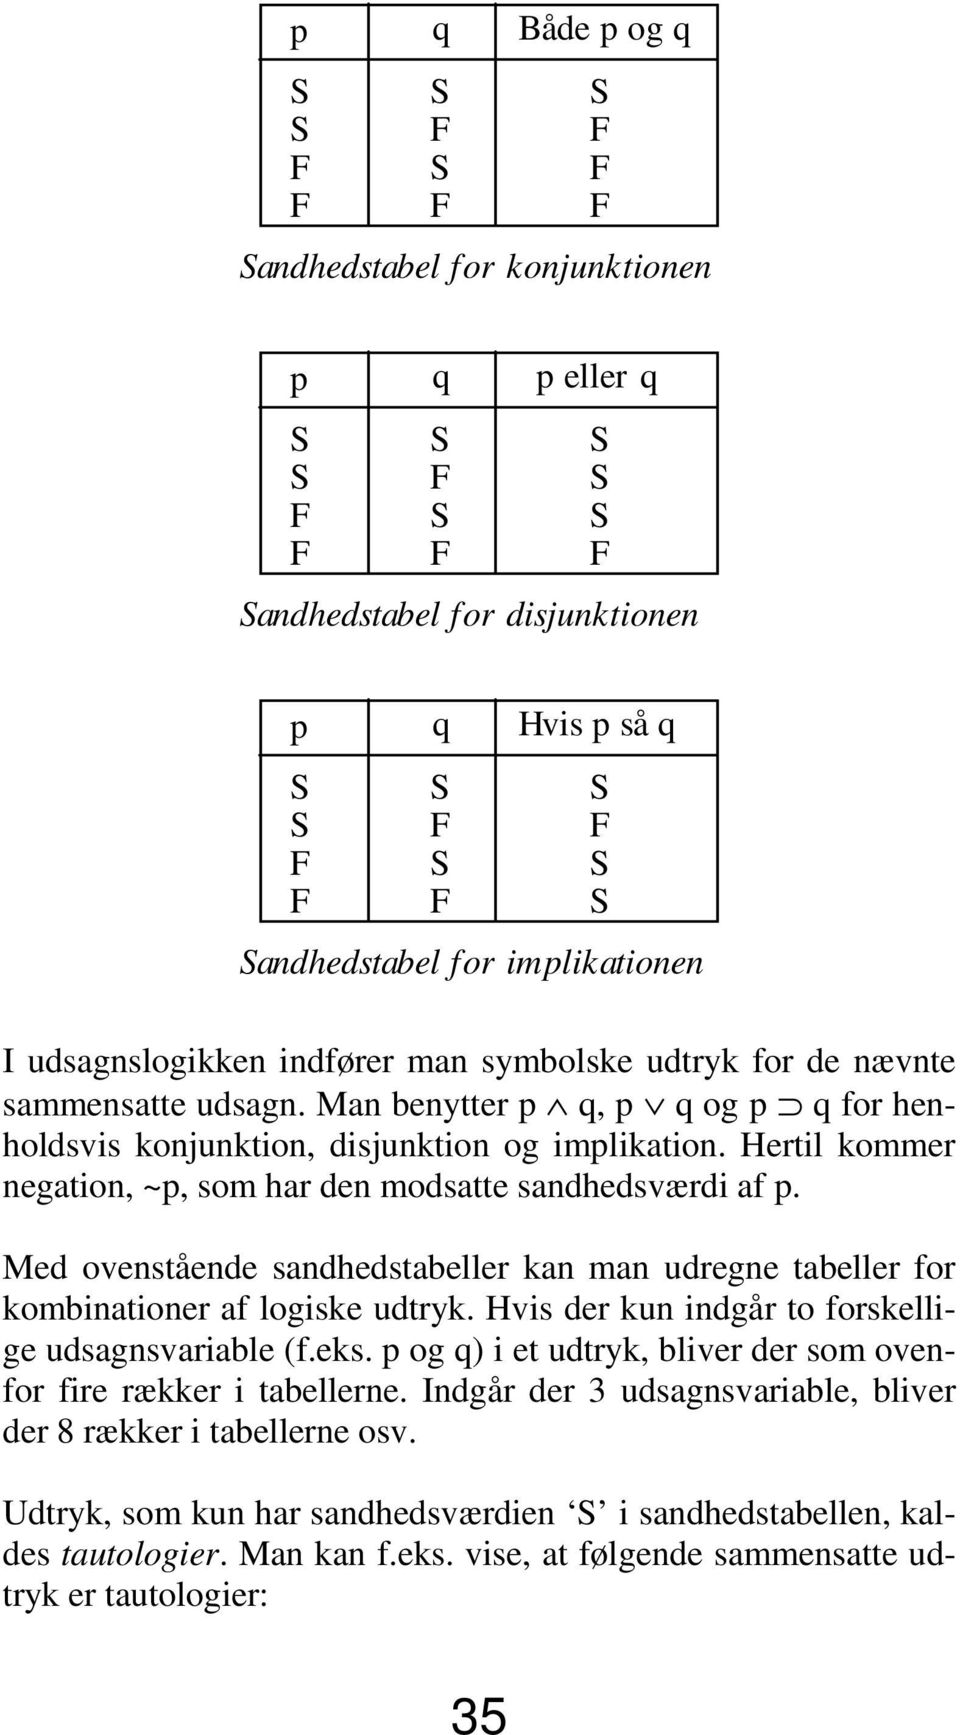 Med ovenstående sandhedstabeller kan man udregne tabeller for kombinationer af logiske udtryk. Hvis der kun indgår to forskellige udsagnsvariable (f.eks.